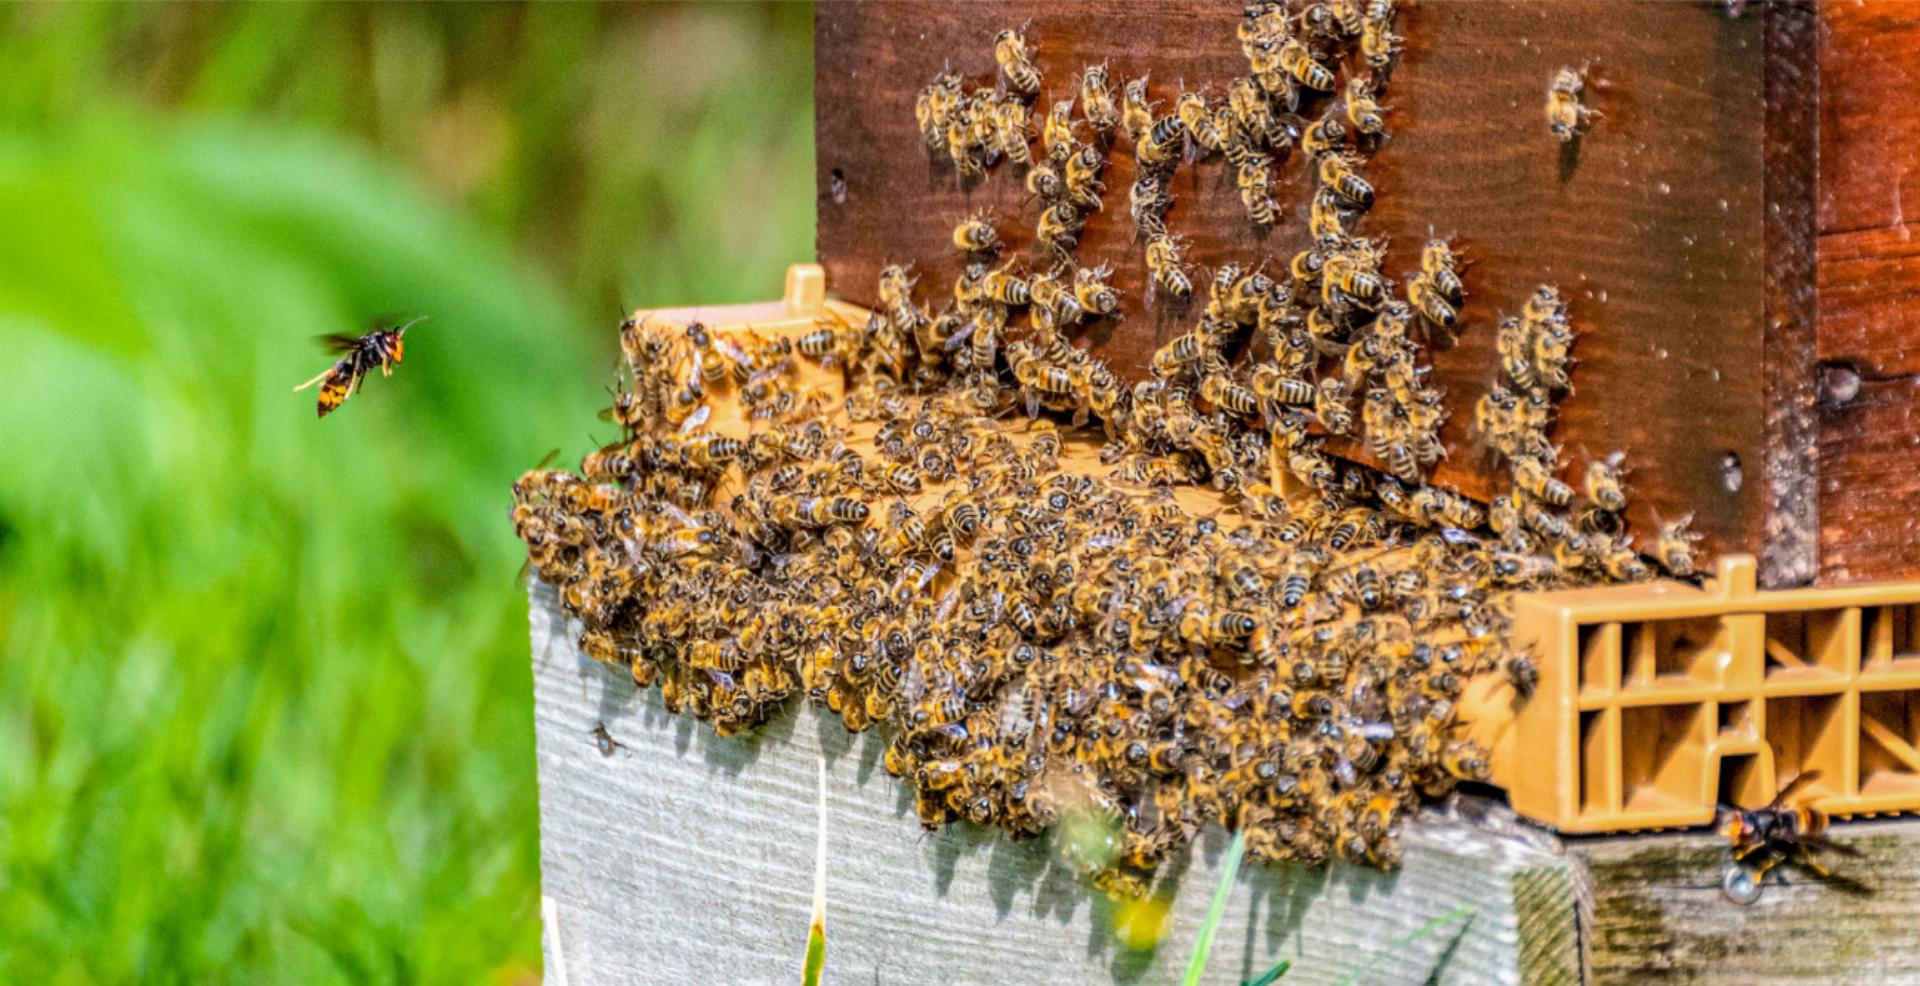 Asiatische Hornissen attackieren einen Bienenstock (hier in Frankreich). BILD: RODOLPHE / STOCK.ADOBE.COM